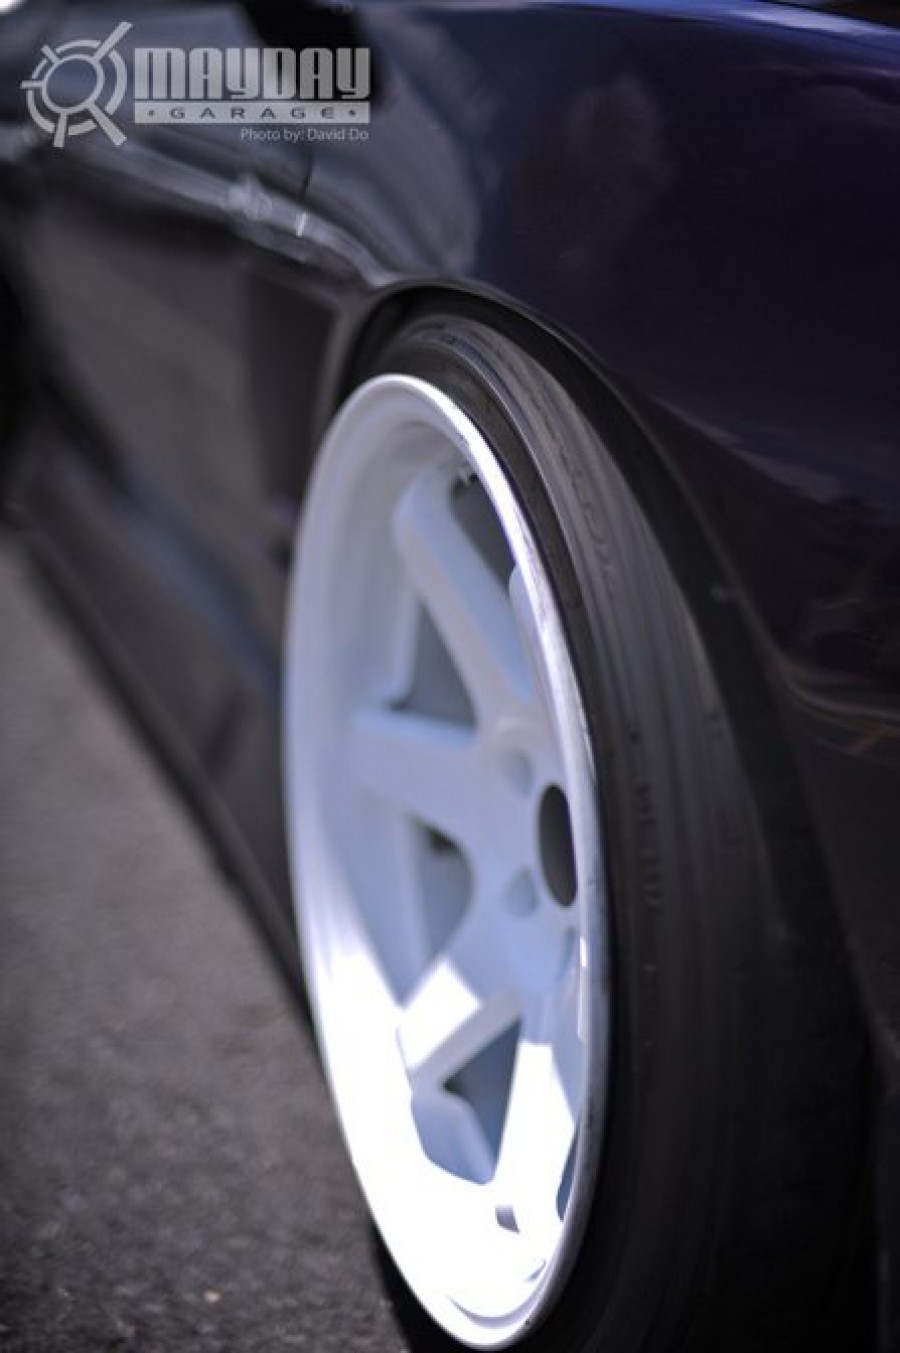 Nissan Silvia S13 wheels Varrstoen ES 2.2.2 18″ 10.5J 225/40 255/35